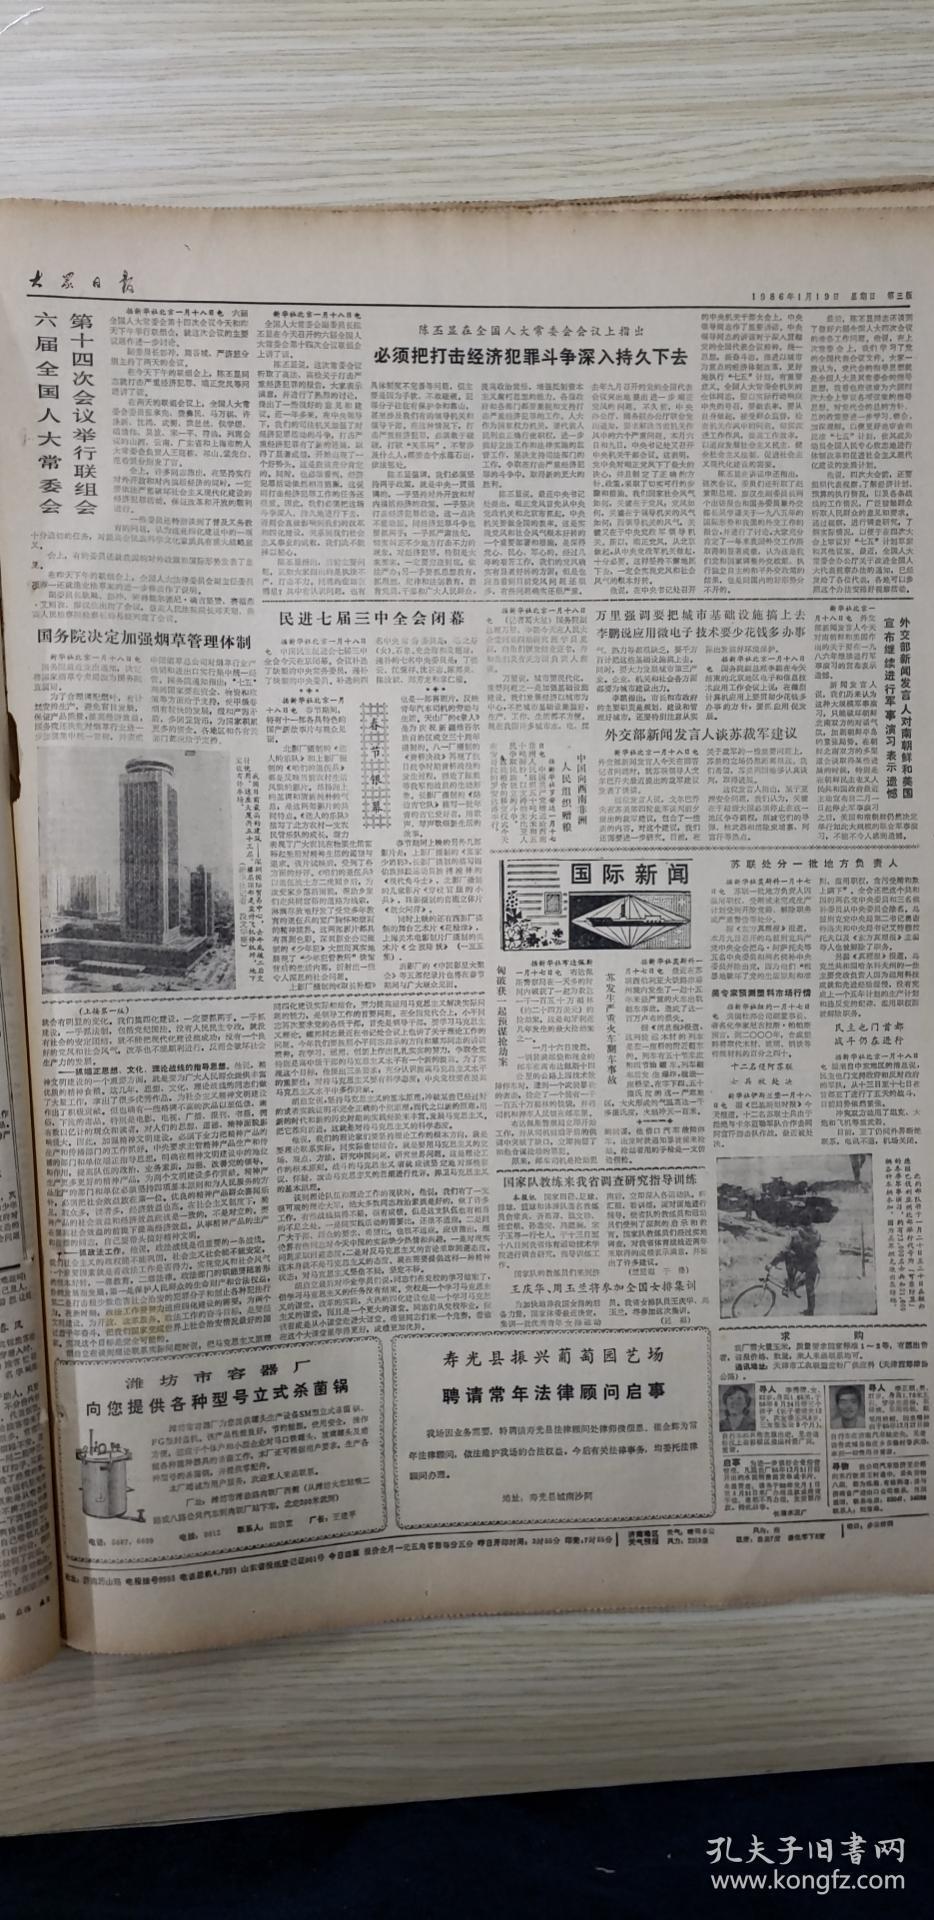 大众日报1986年1月19日星期日（4开四版）中央书记处今年主要抓好四项工作；加强科技支援，发展乡镇经济。